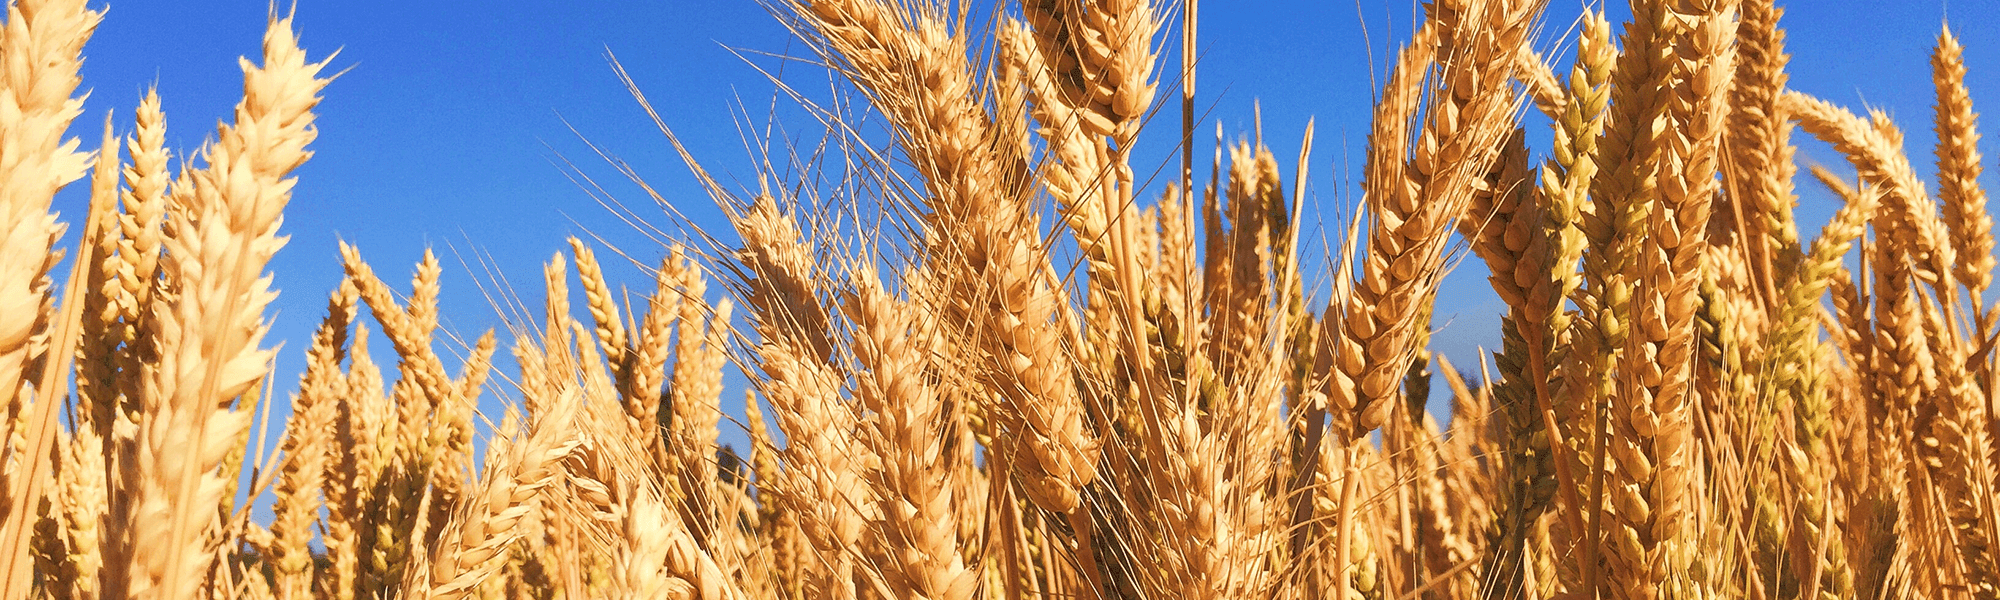 Wheat field in Regional Australia